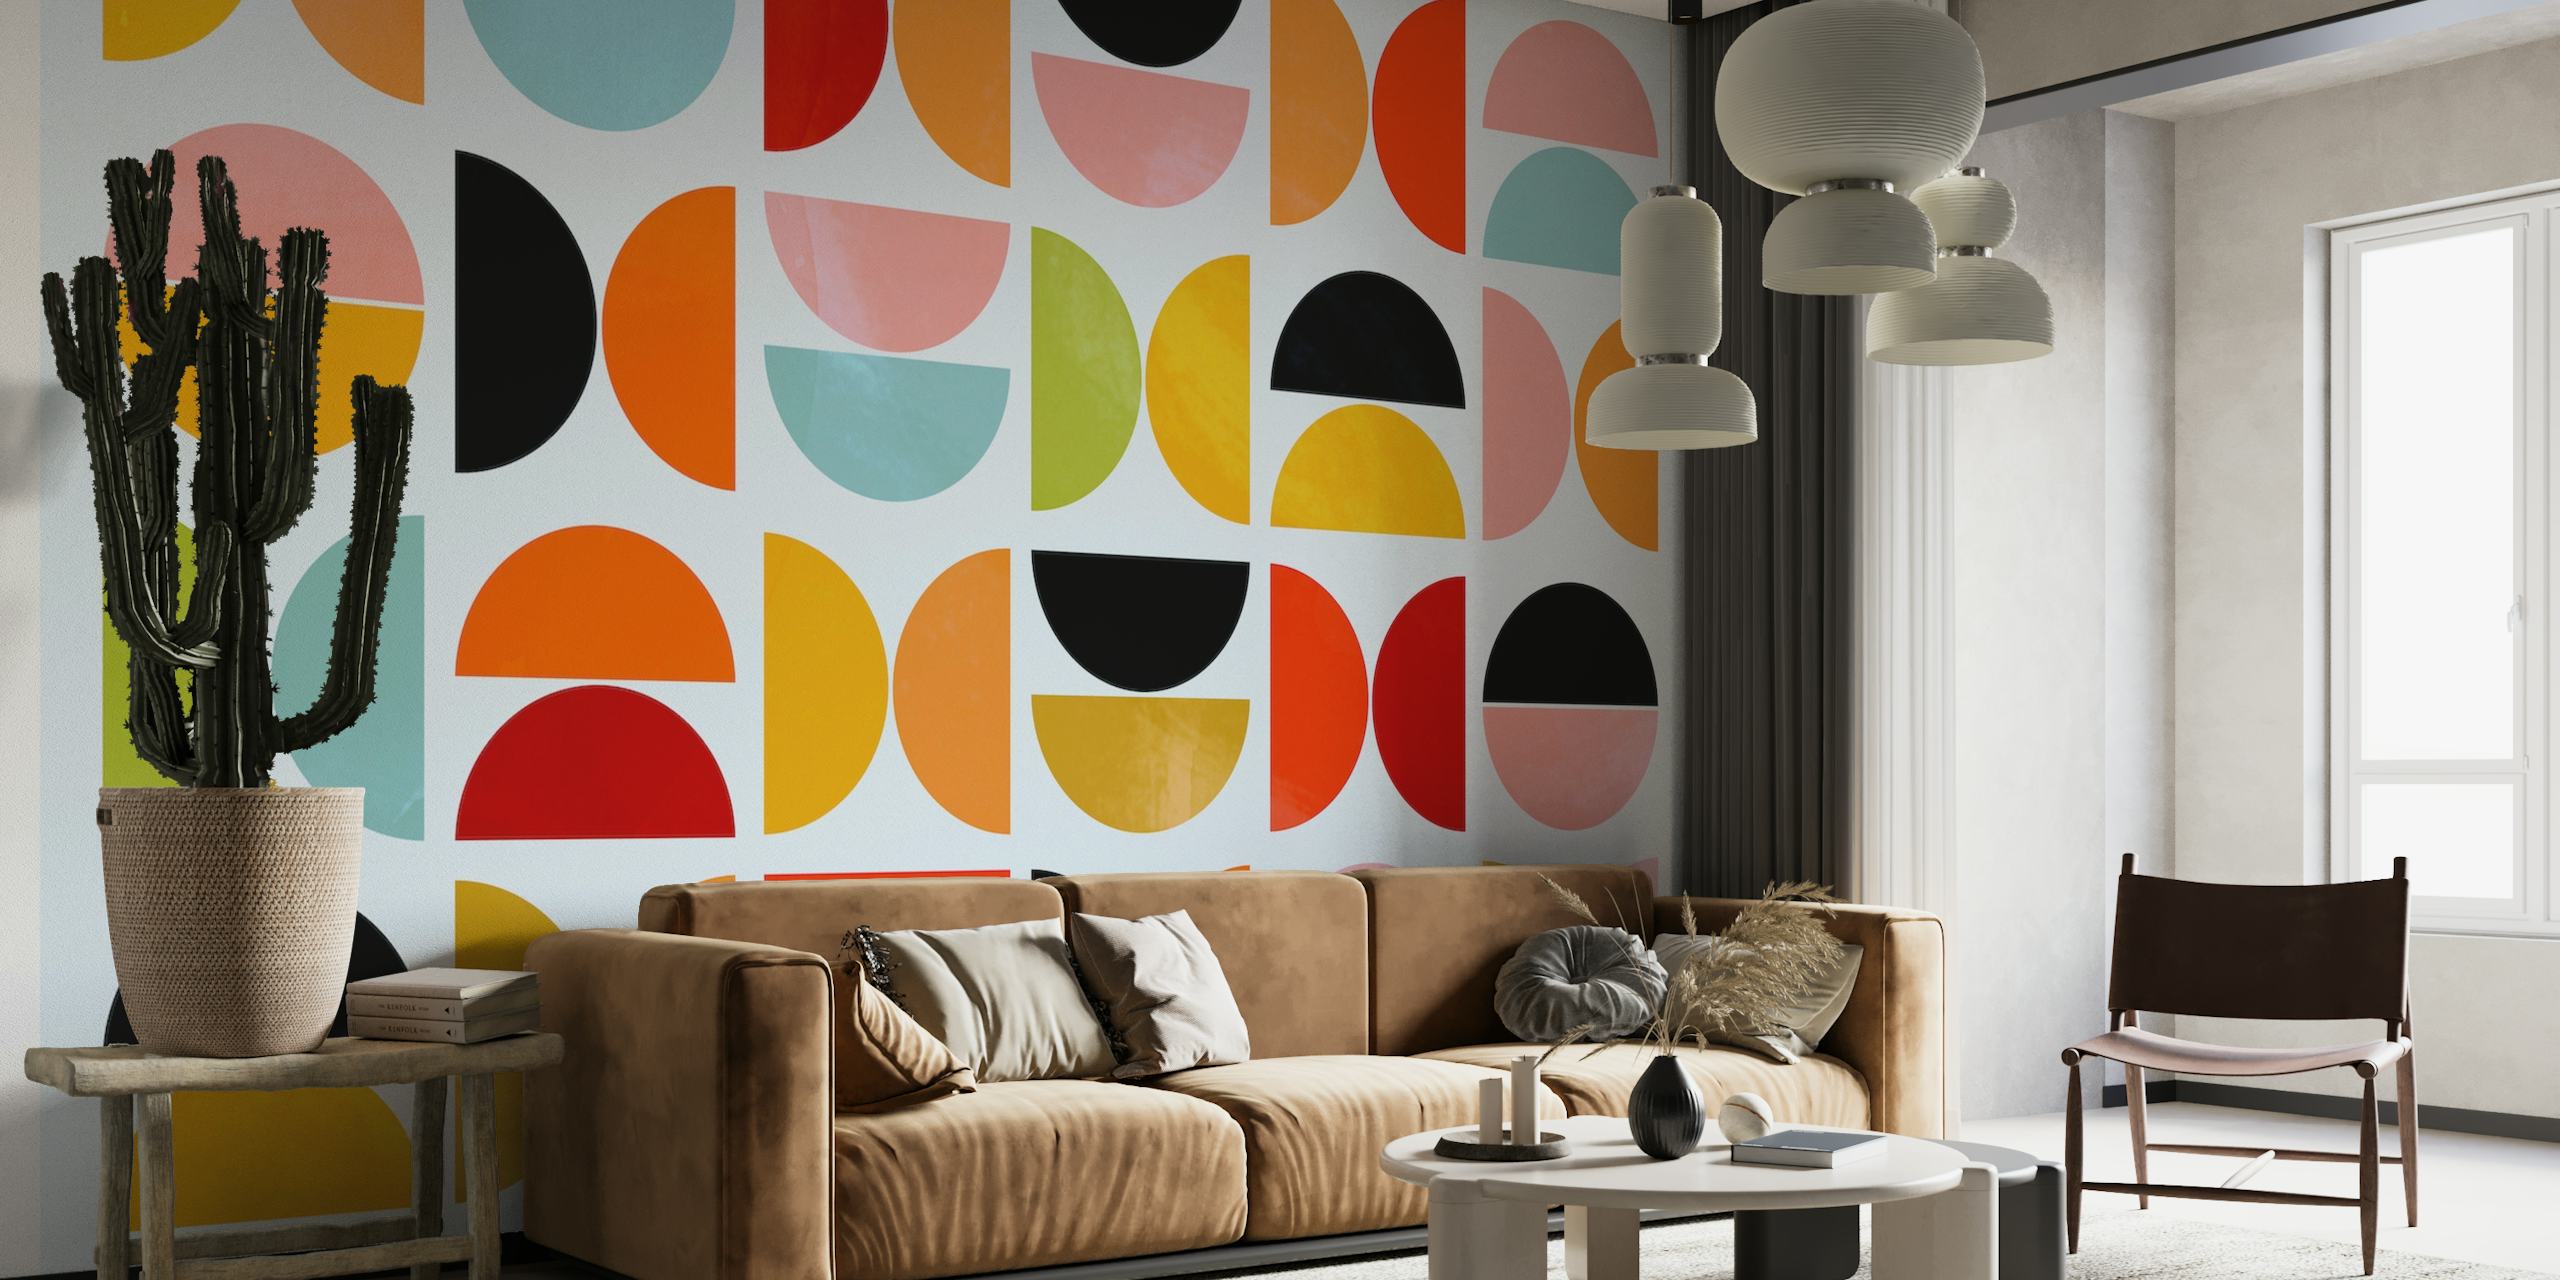 Živopisni geometrijski oblici u dizajnu zidnih slika inspiriranih Bauhausom.